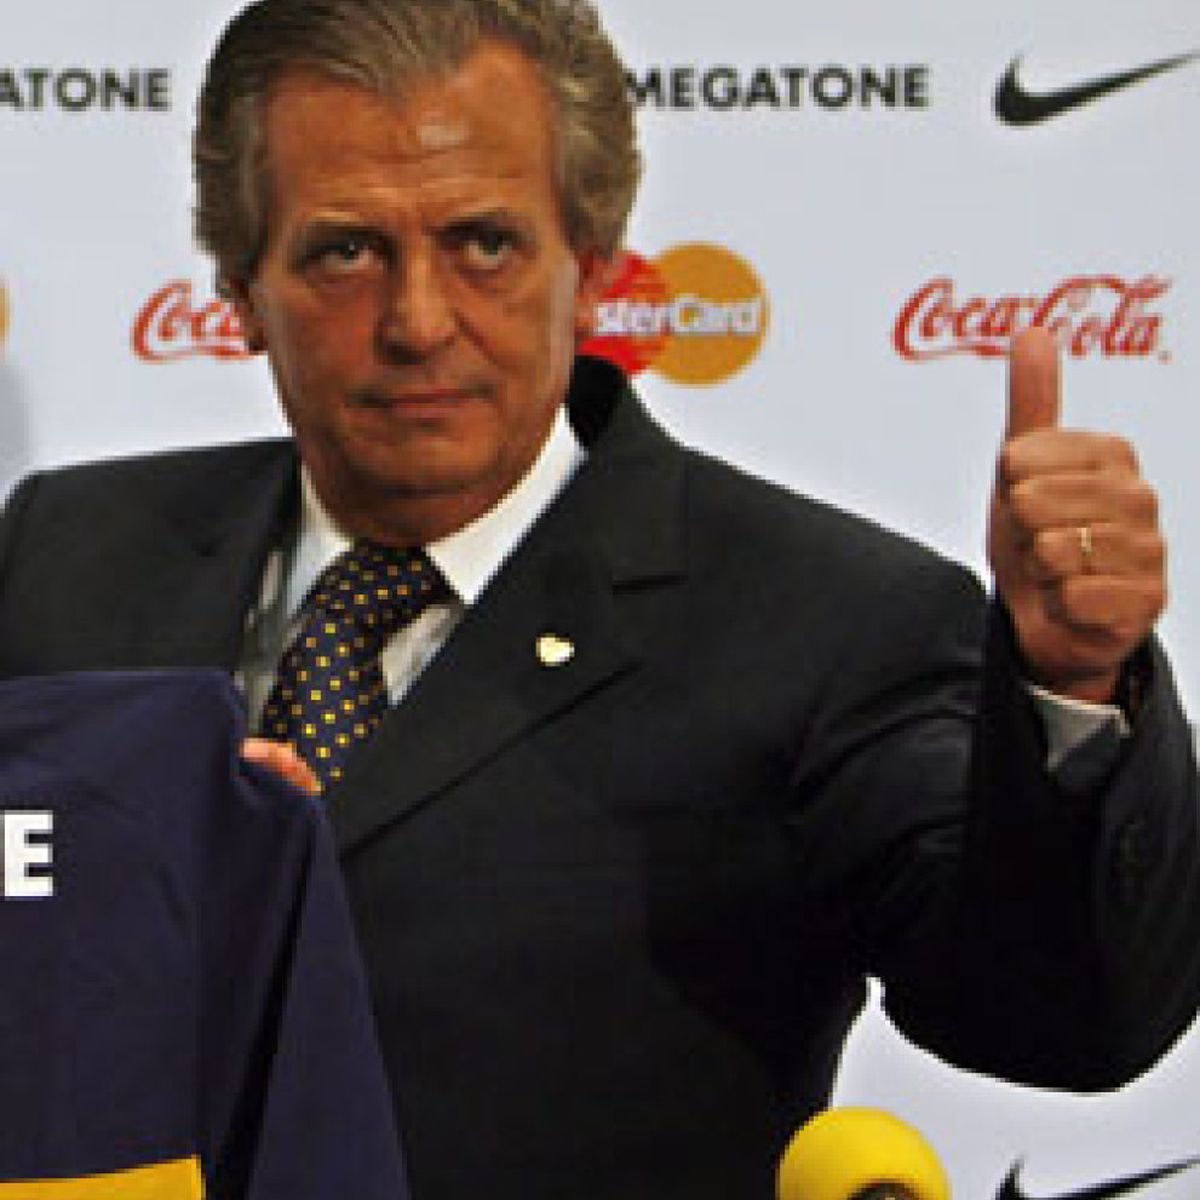 Falleció Mellano, presidente del club Sportivo Italiano - Deportes